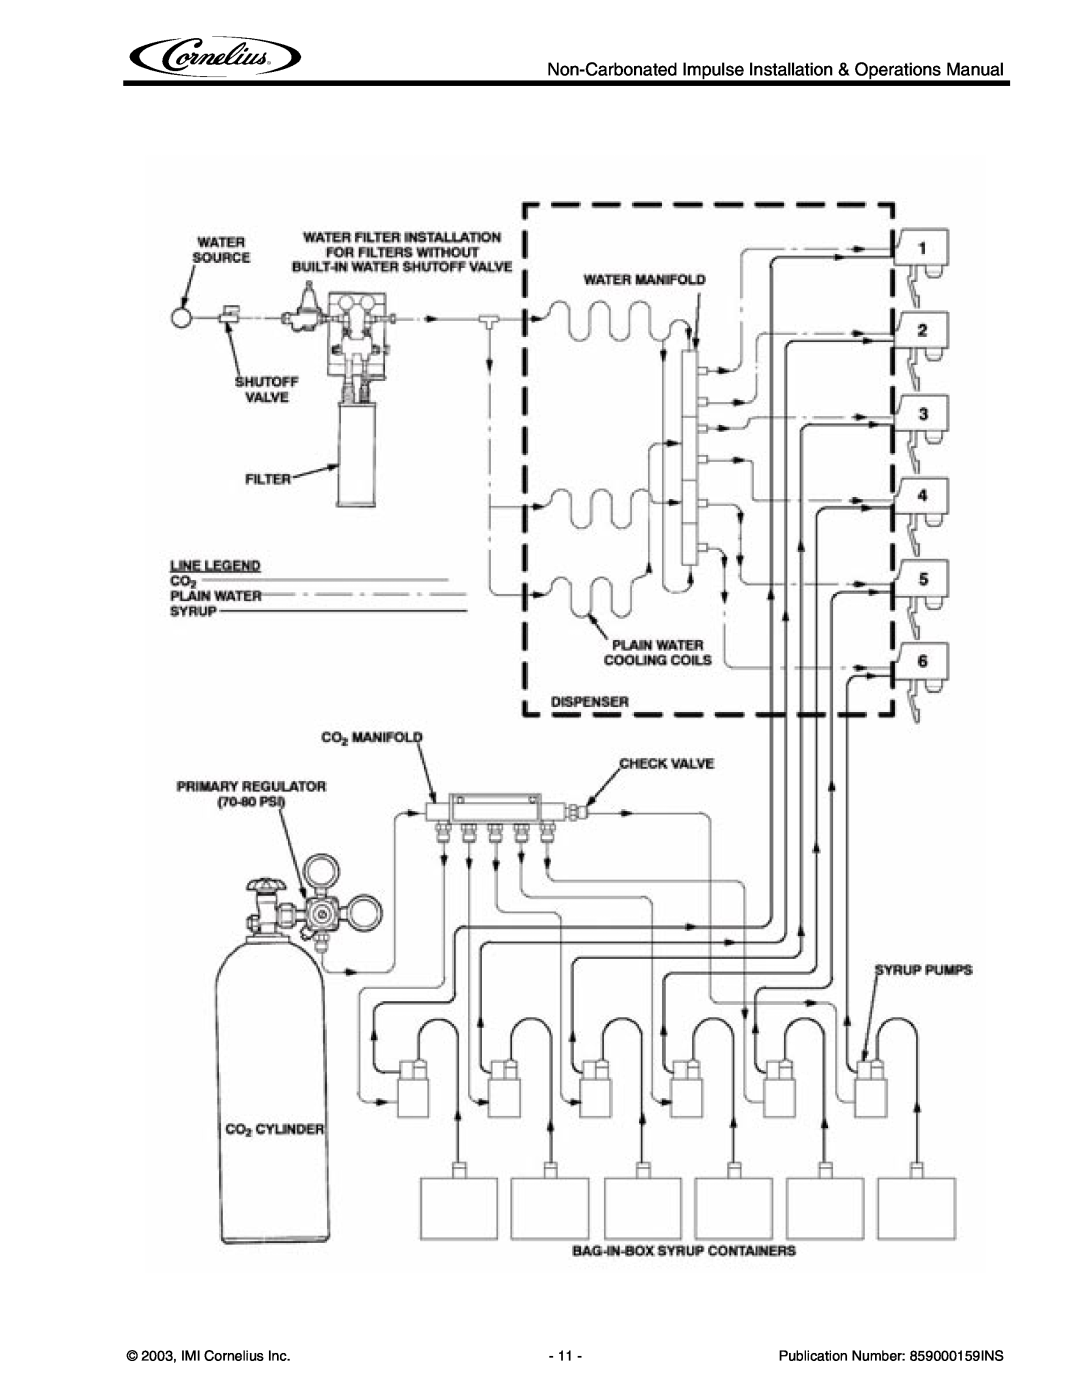 Cornelius Non-Carbonated Post-Mix Beverage Dispenser Non-Carbonated Impulse Installation & Operations Manual 